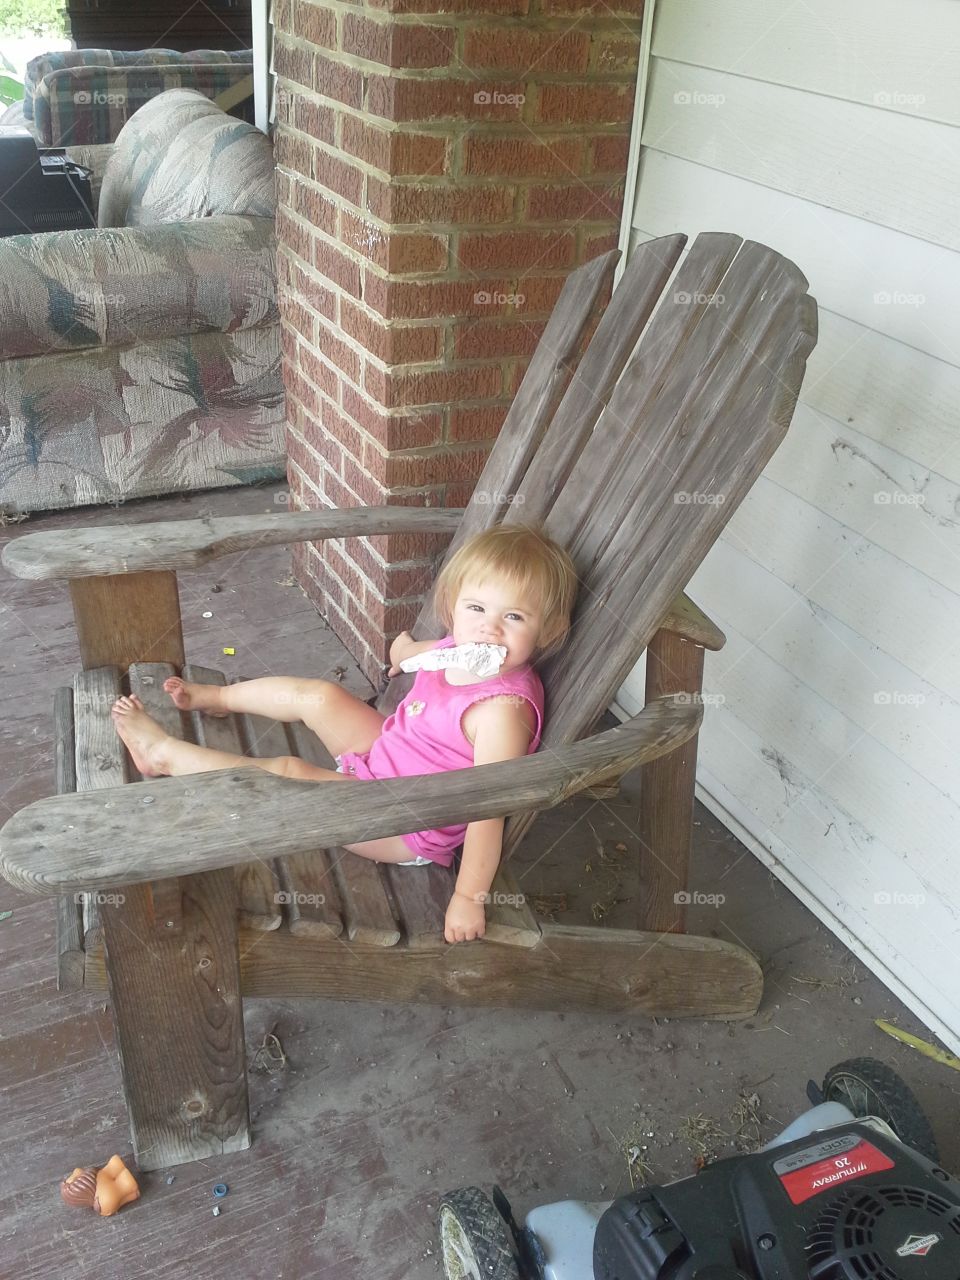 summer gabberz. gabberz loves thus deck chair